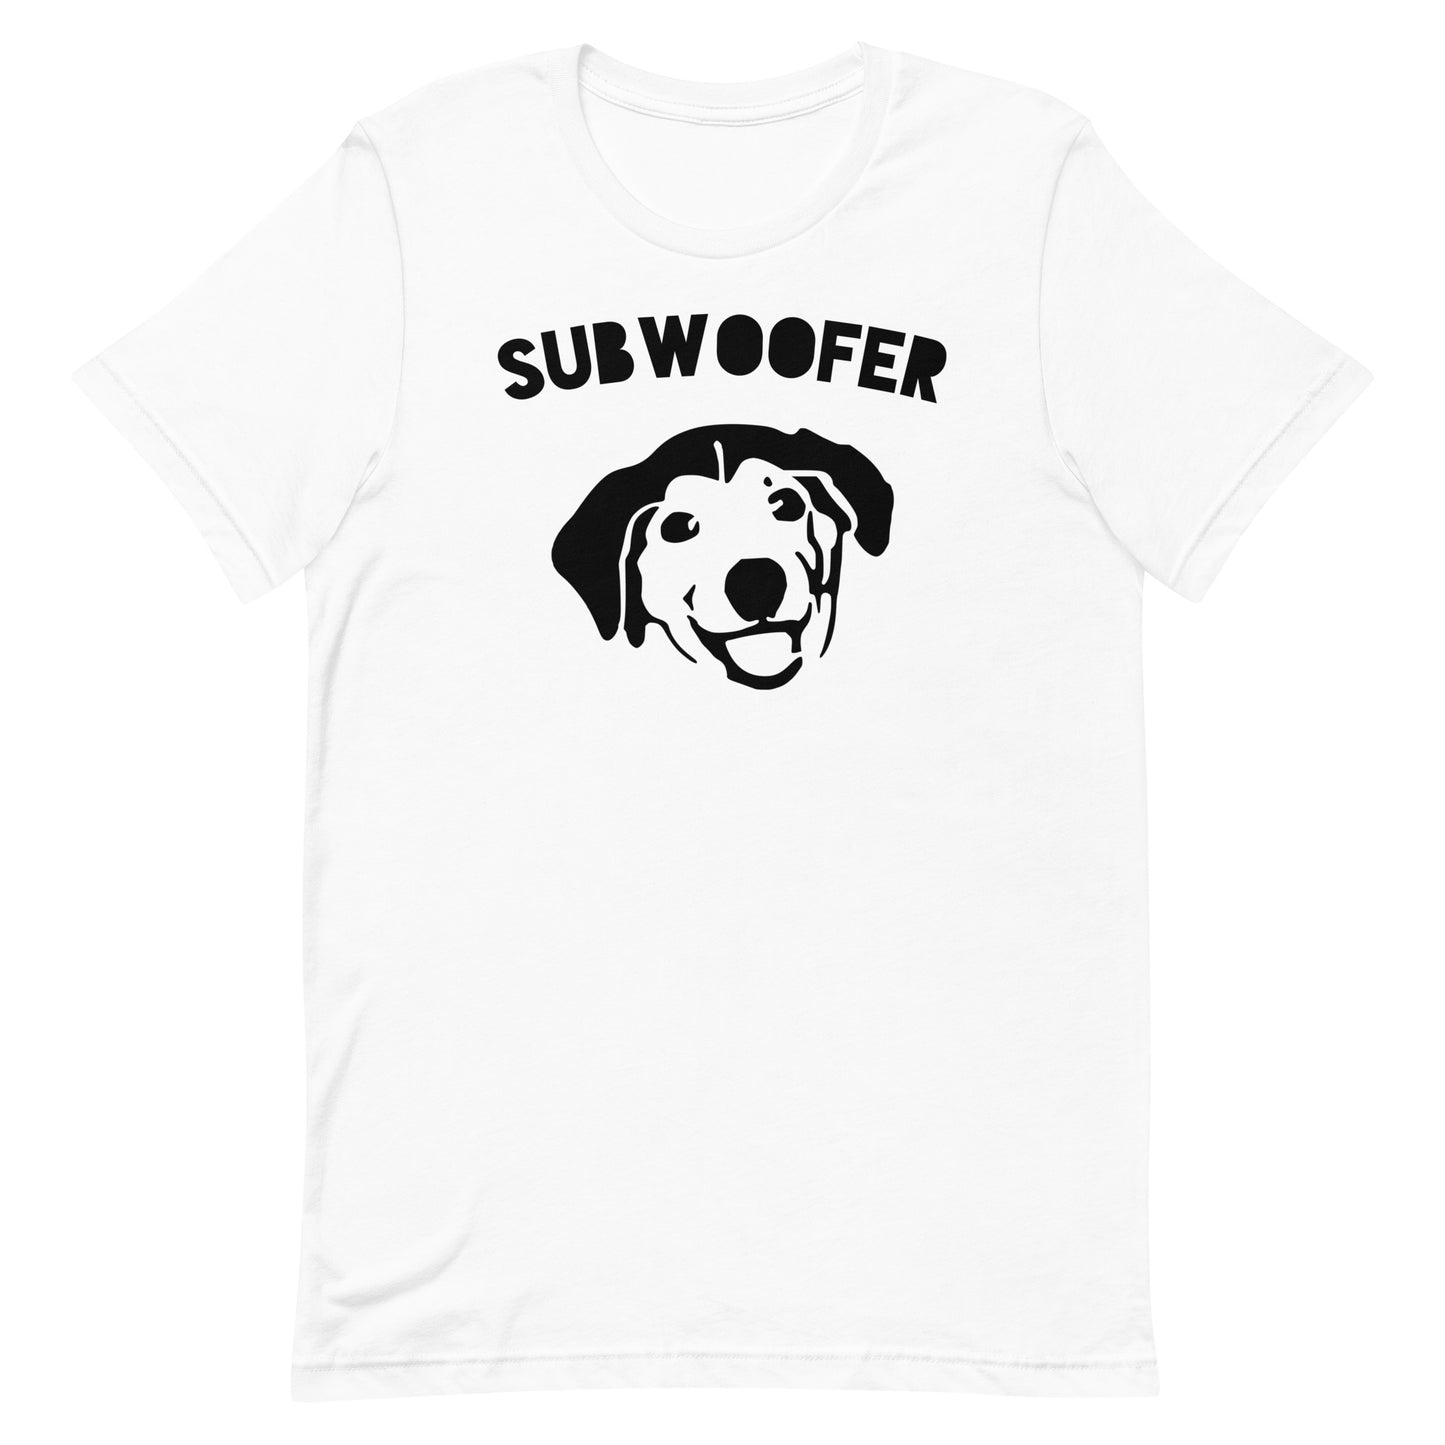 Subwoofer 2 Shirt